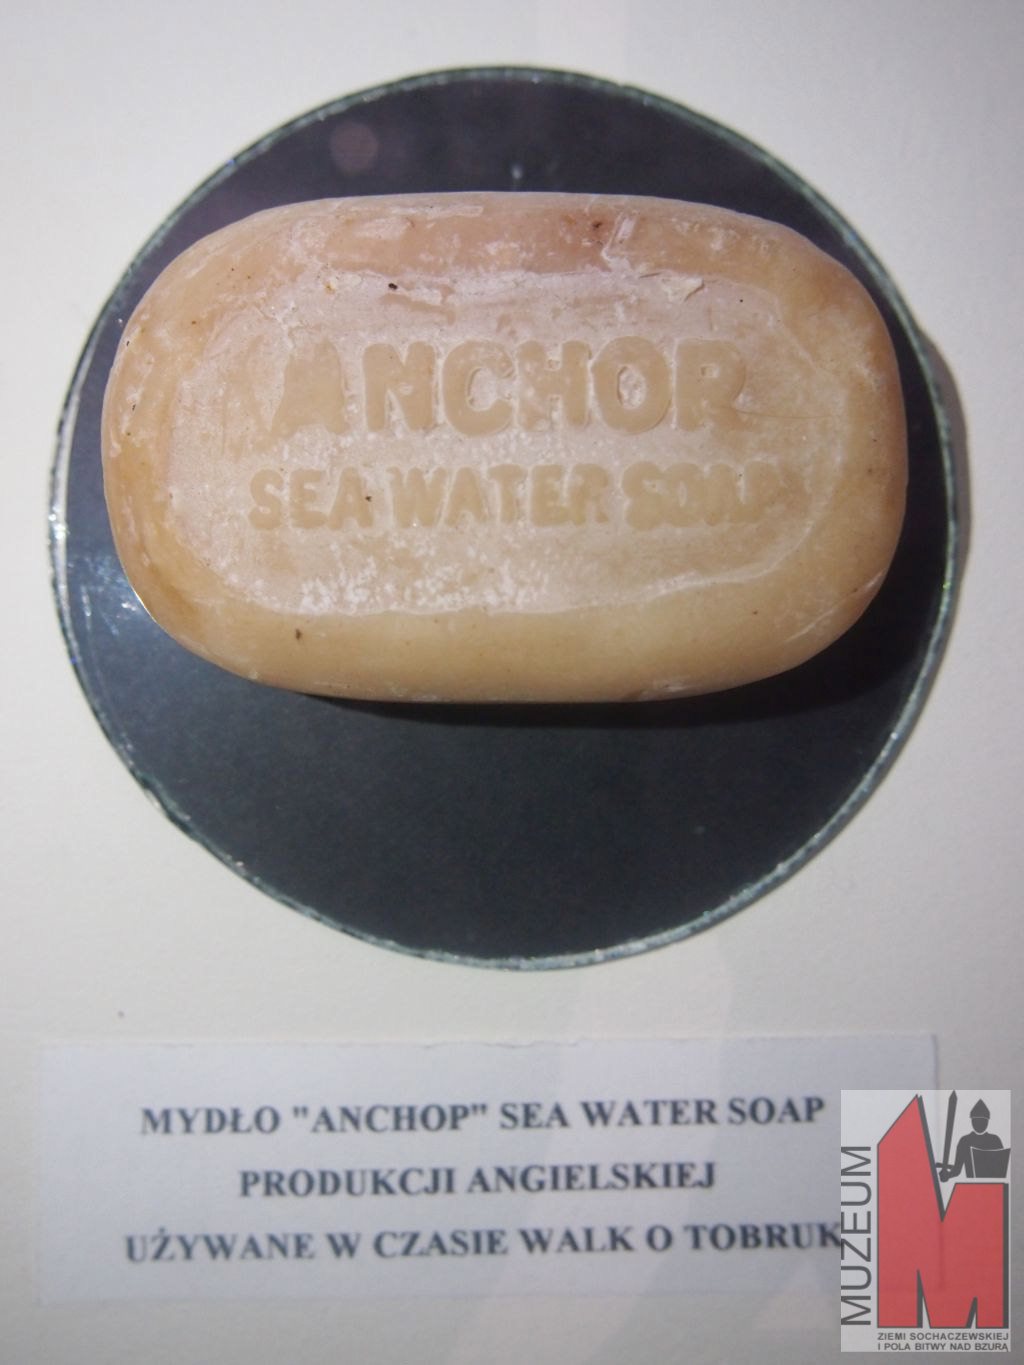 Brytyjskie-mydło-Anchor-używane-przez-Leona-Gradowskiego-Lisa-podczas-walko-o-Tobruk.jpg